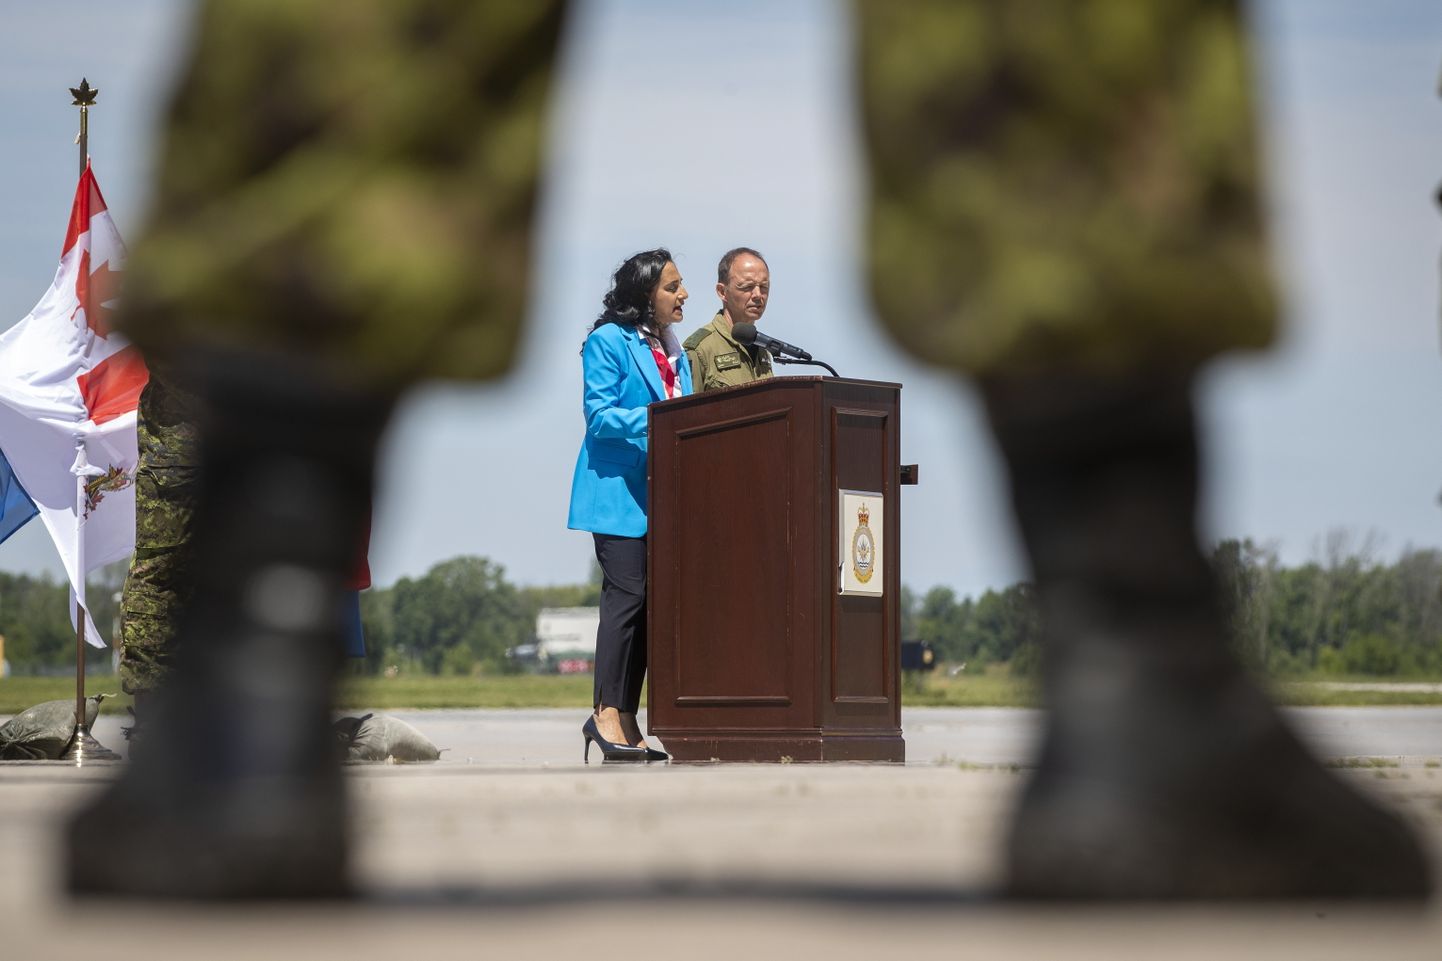 Kanada kaitseminister Anita Anand (sinises jakis) 20. juunil 2022 Trentoni sõjaväebaasis kulutusi välja kuulutamas.